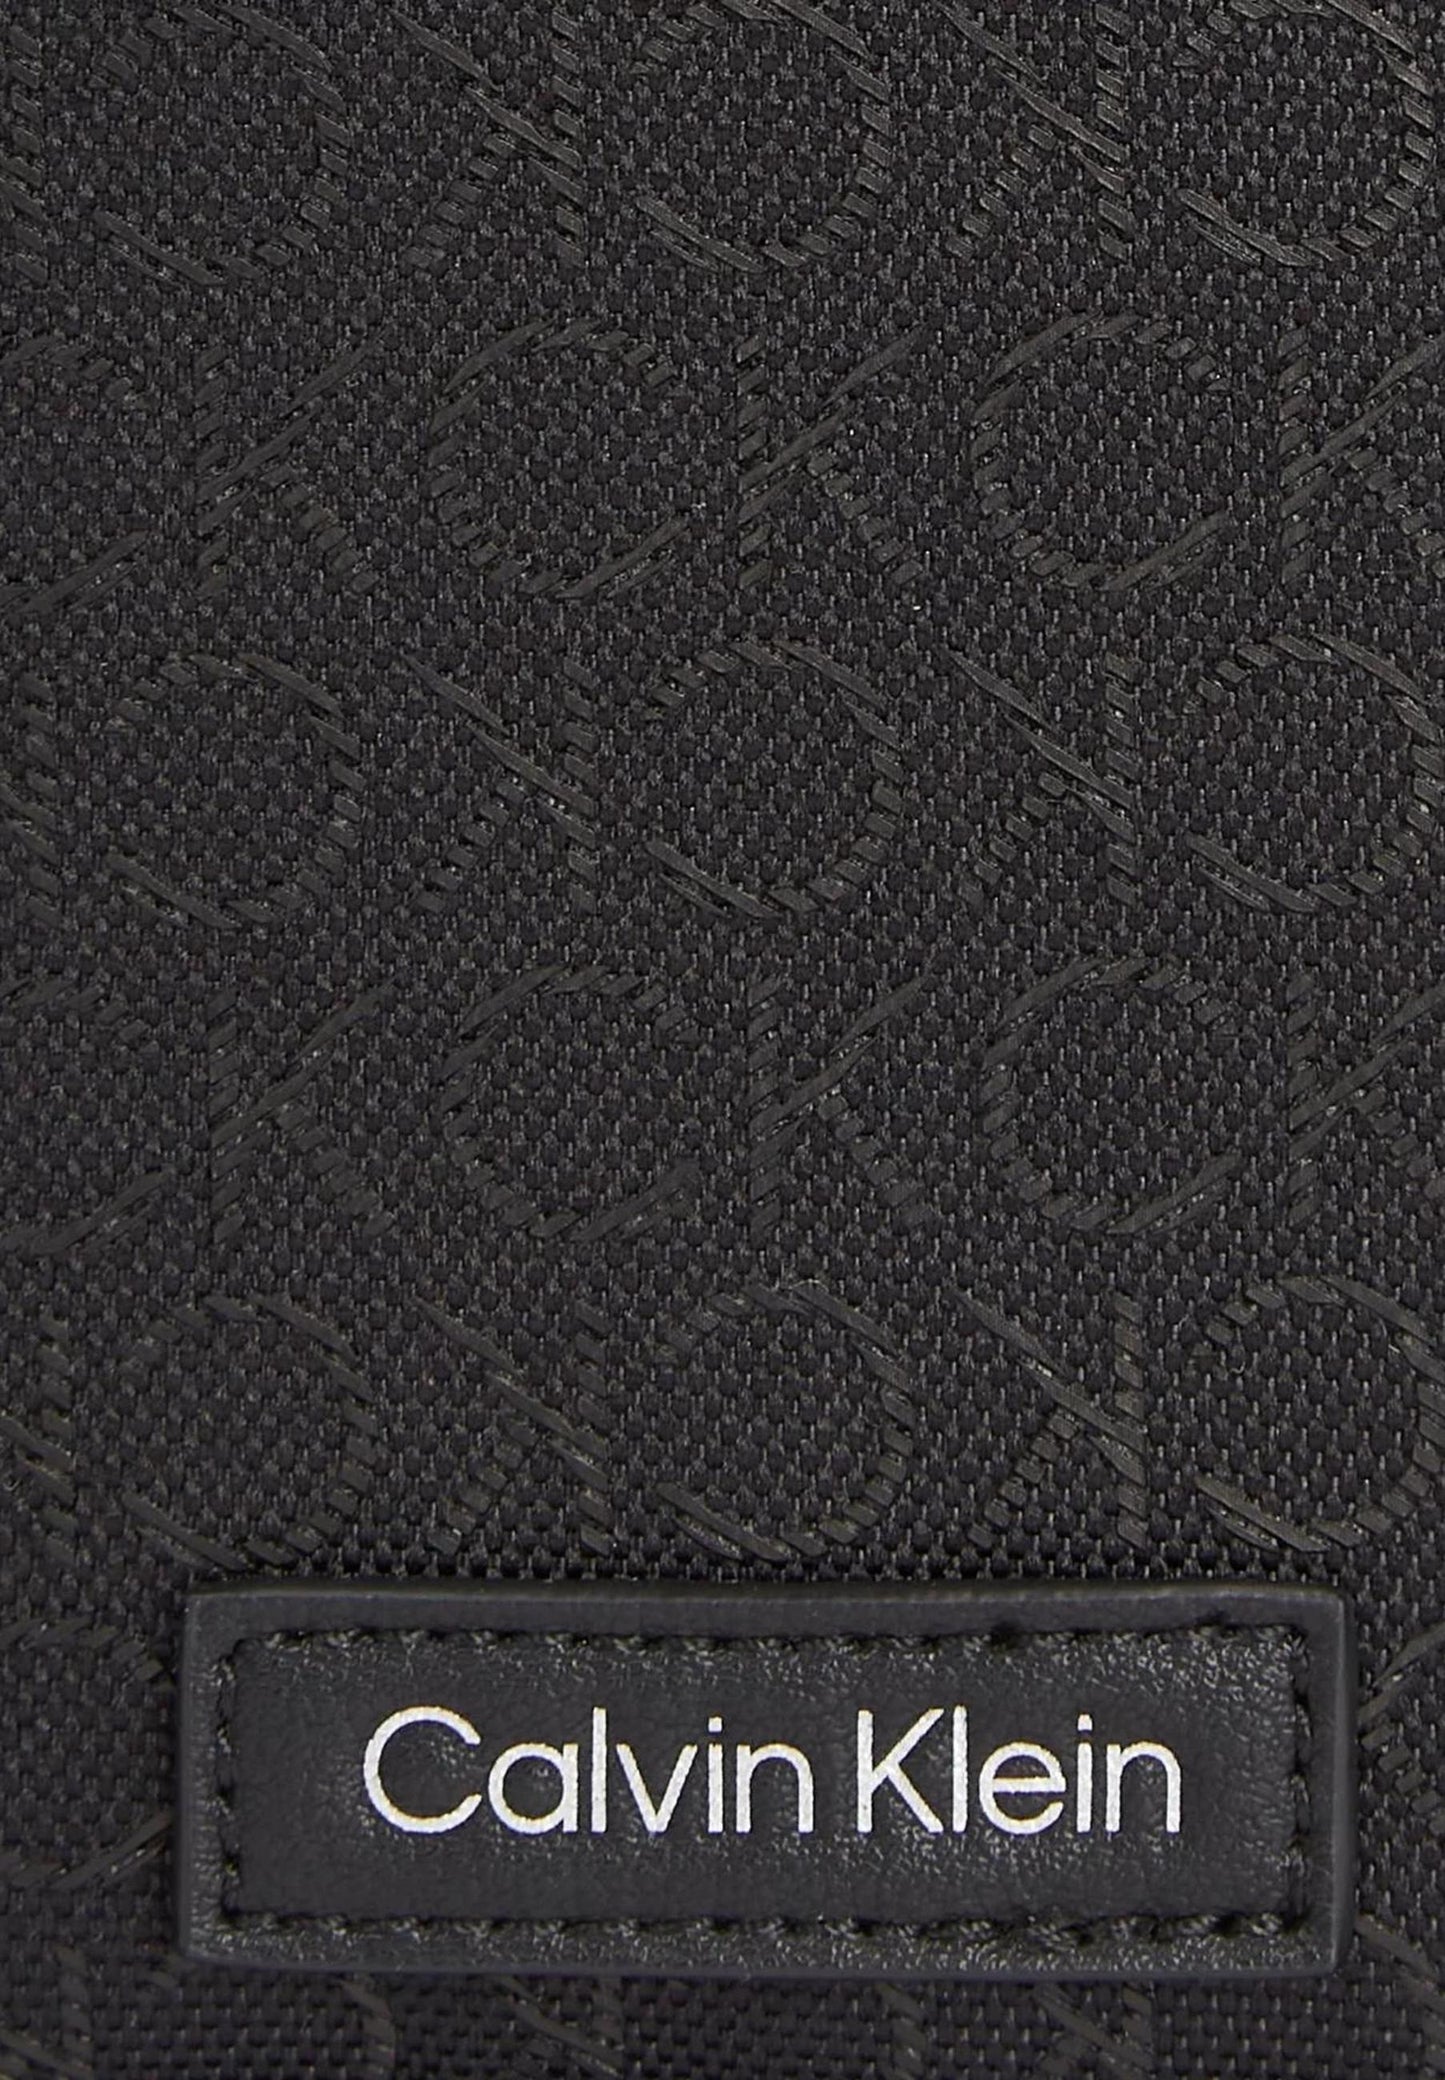 Marchio: Calvin Klein - Genere: Uomo - Tipologia: Borse - Stagione: Primavera/EsColore: nero, Taglia: UNICA